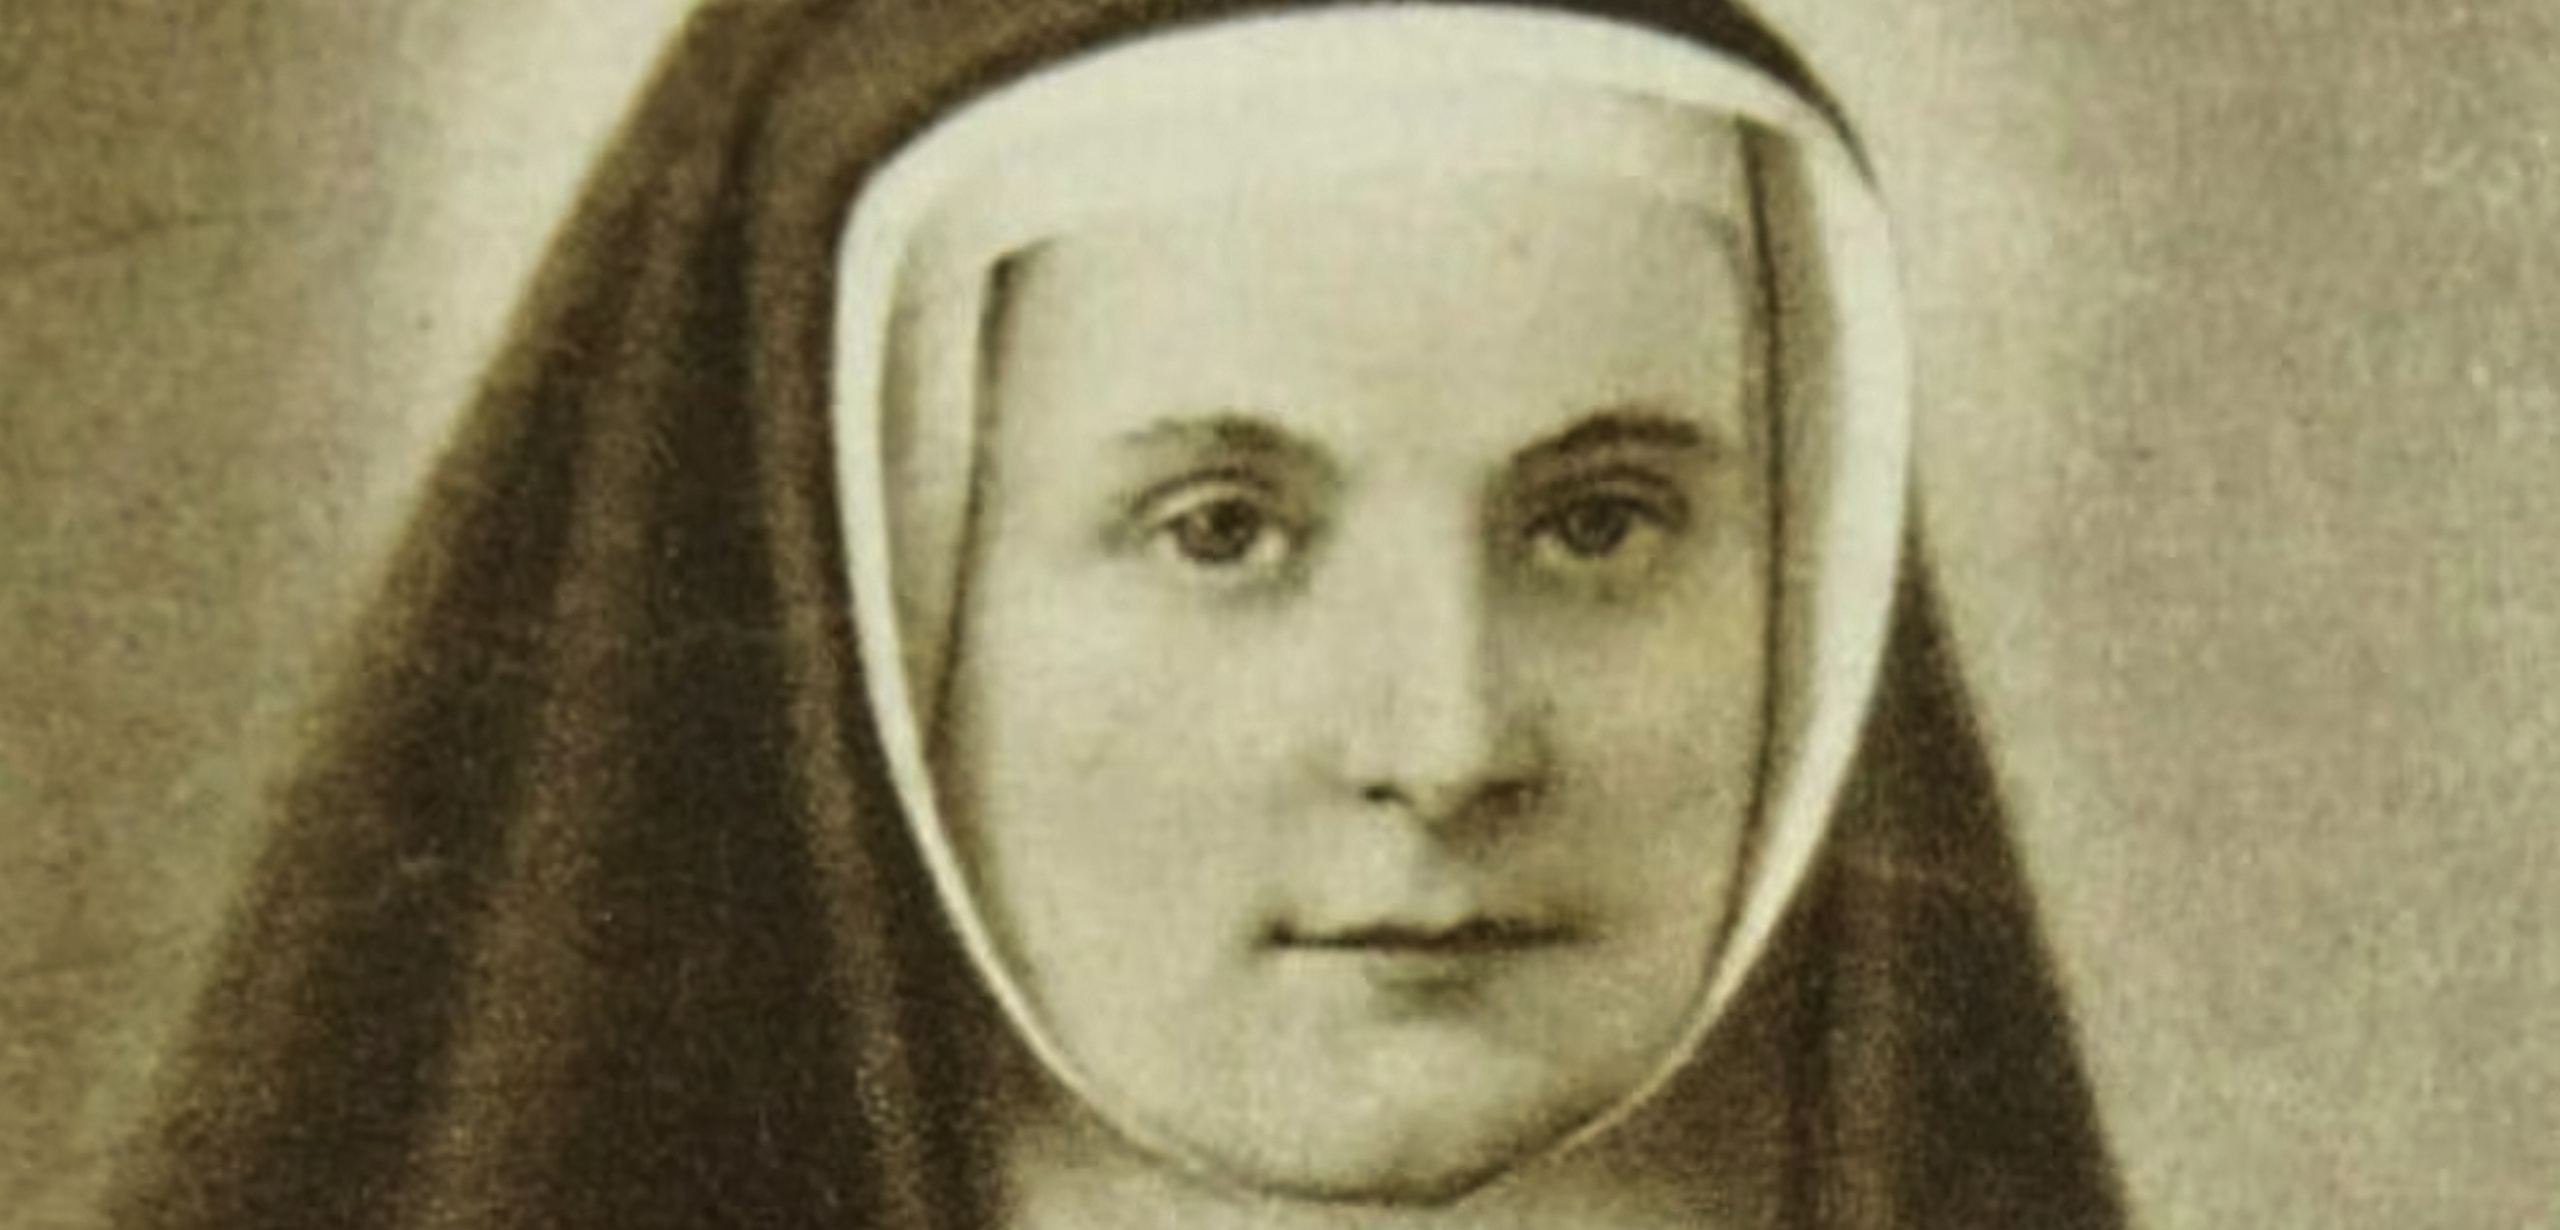 Beata María Teresa de Soubiran